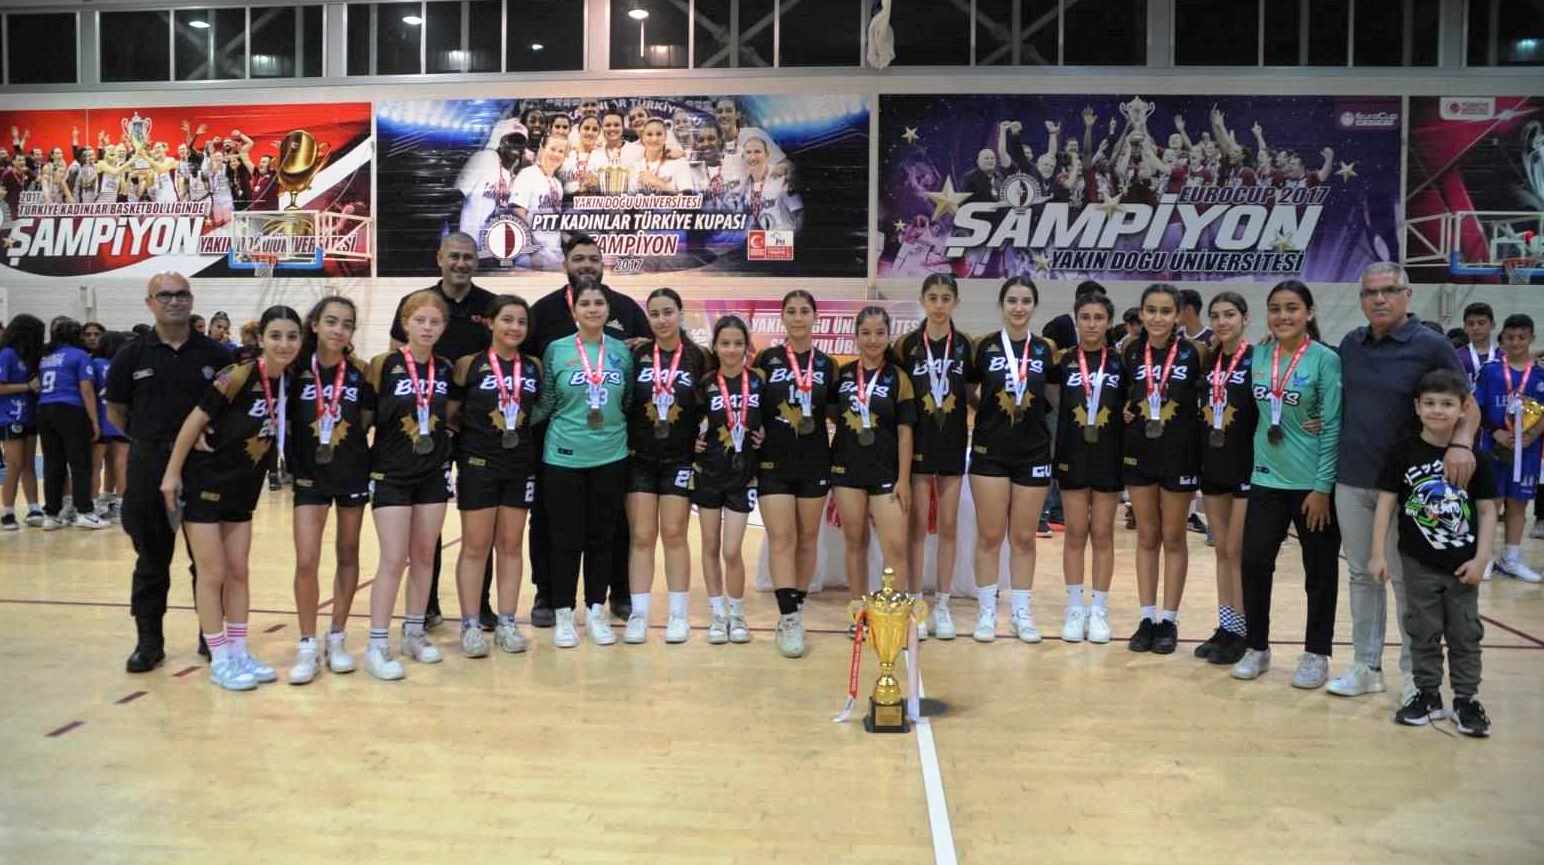 DİGEM, Özgün Atakan Kızlar Ligi şampiyonu